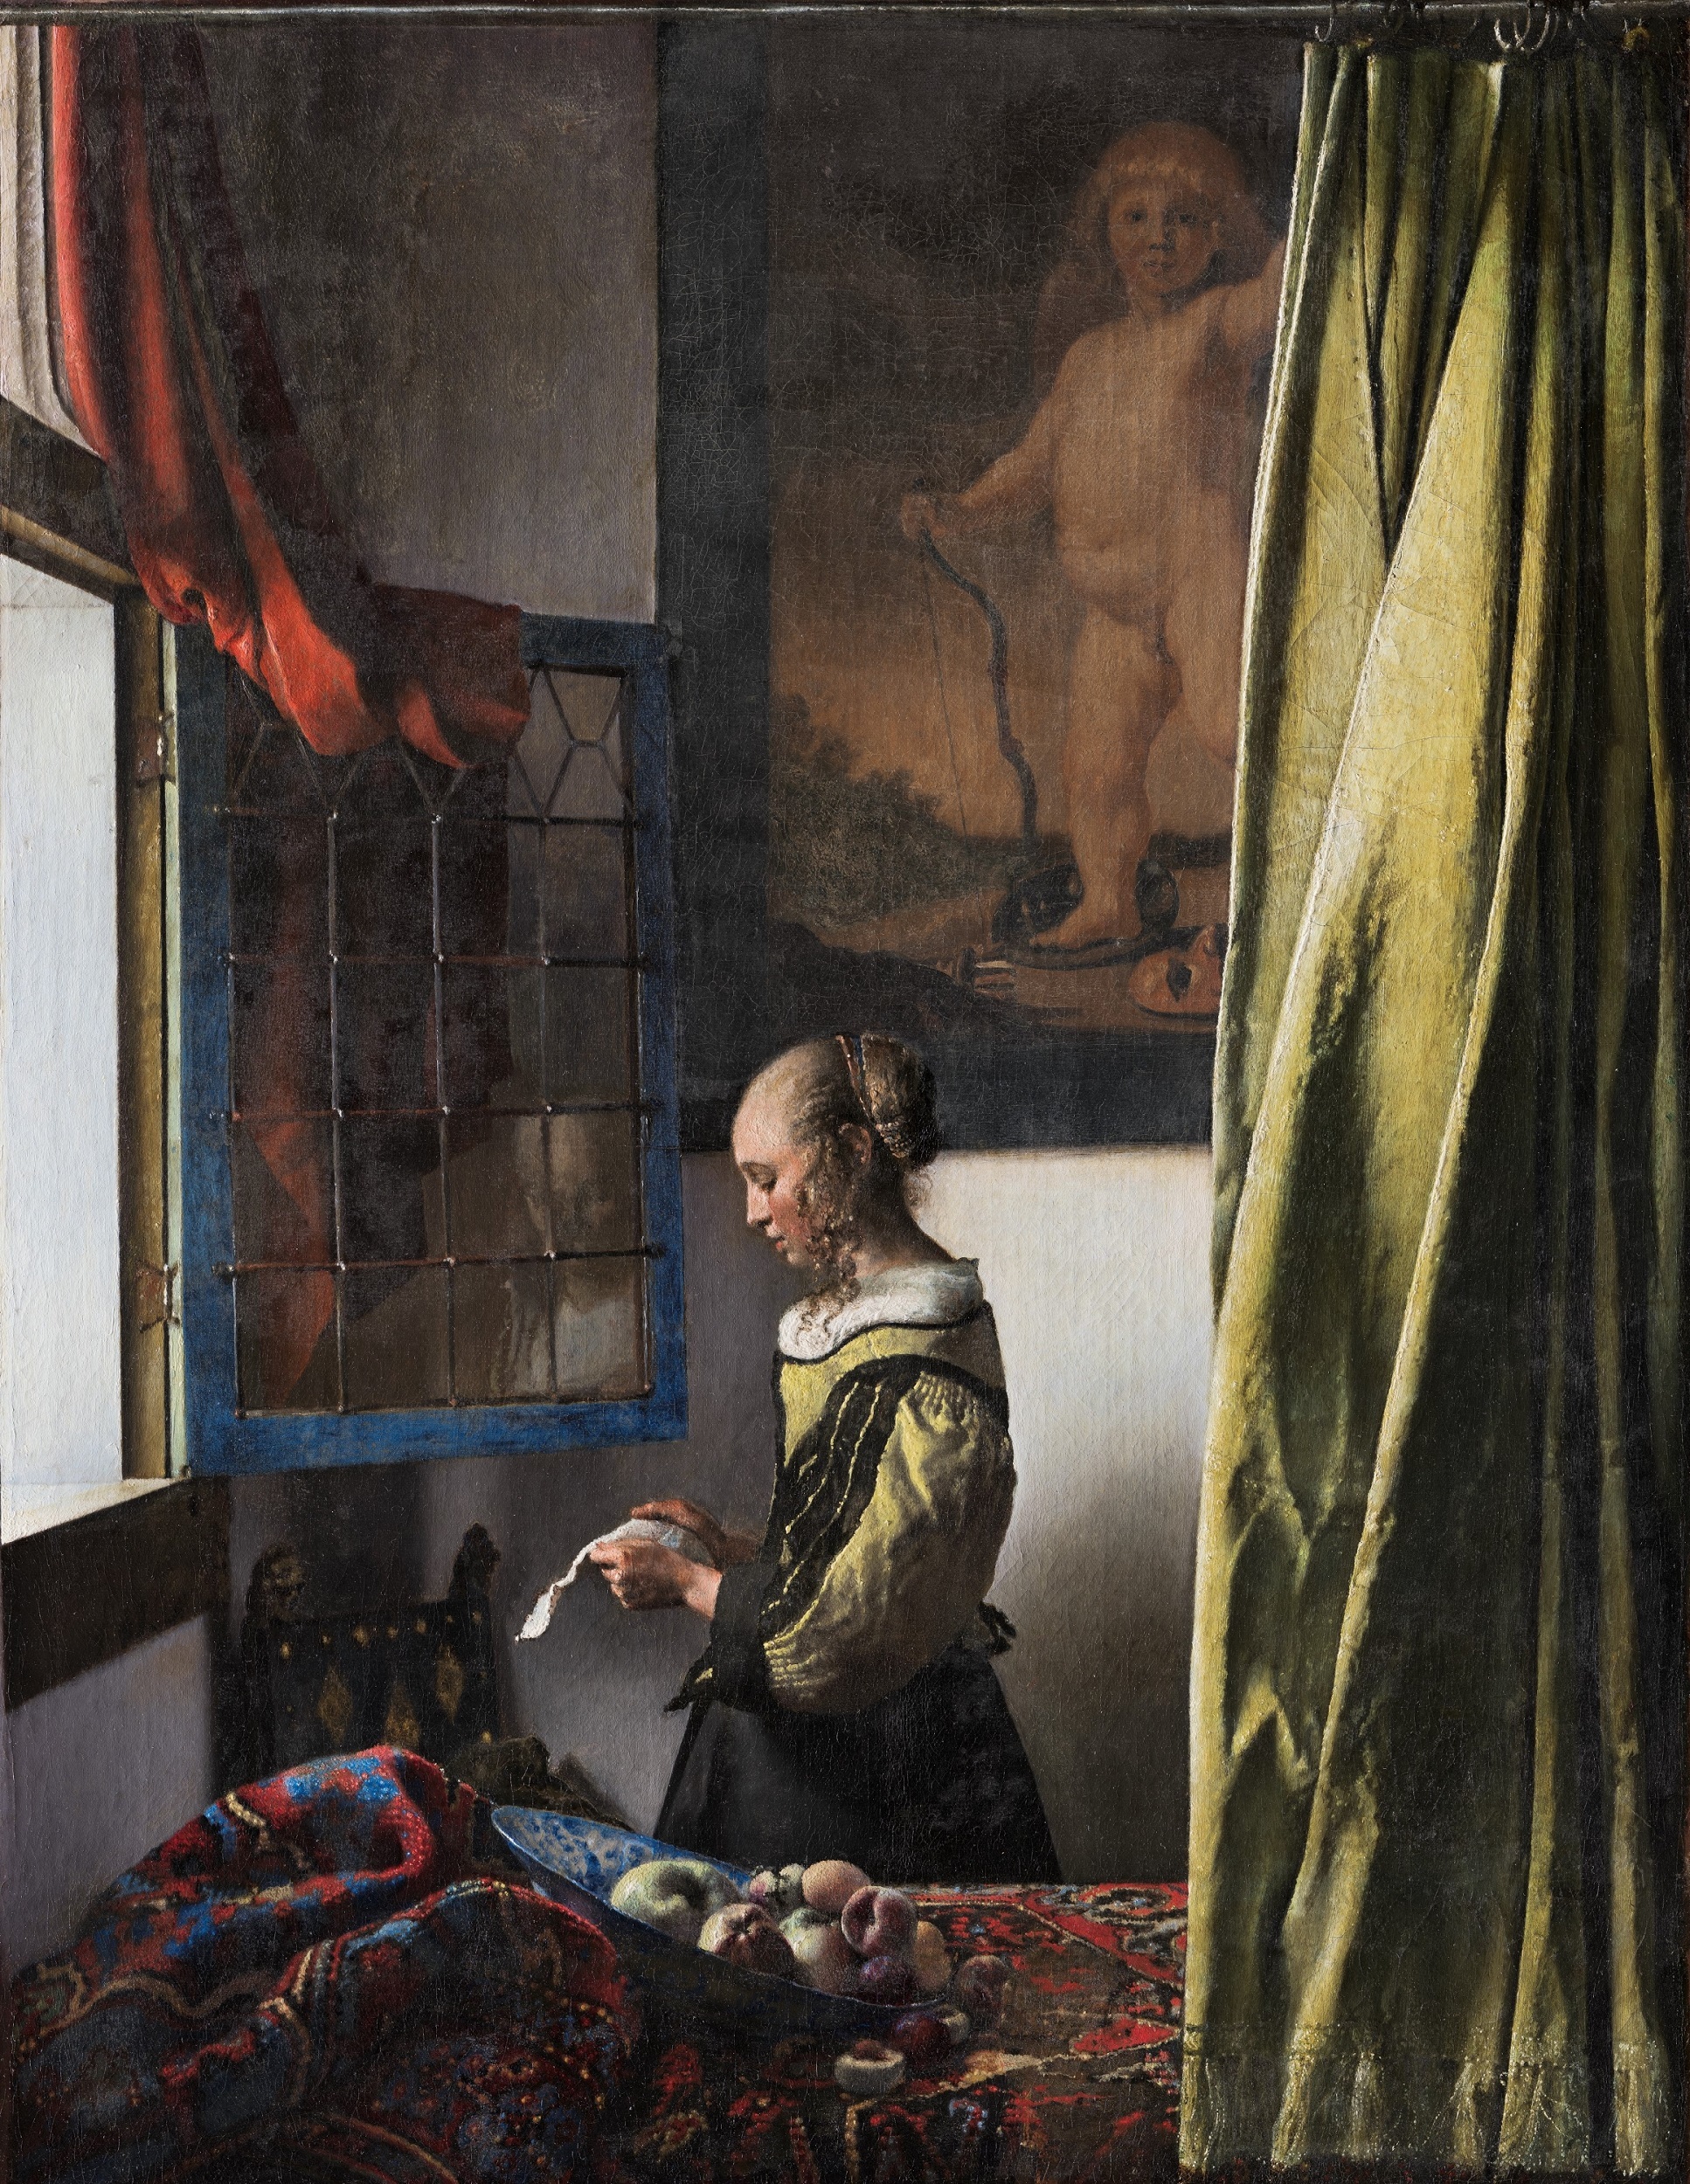 ヨハネス・フェルメール 「窓辺で手紙を読む女」（修復後）1657-59年頃 ドレスデン国立古典絵画館